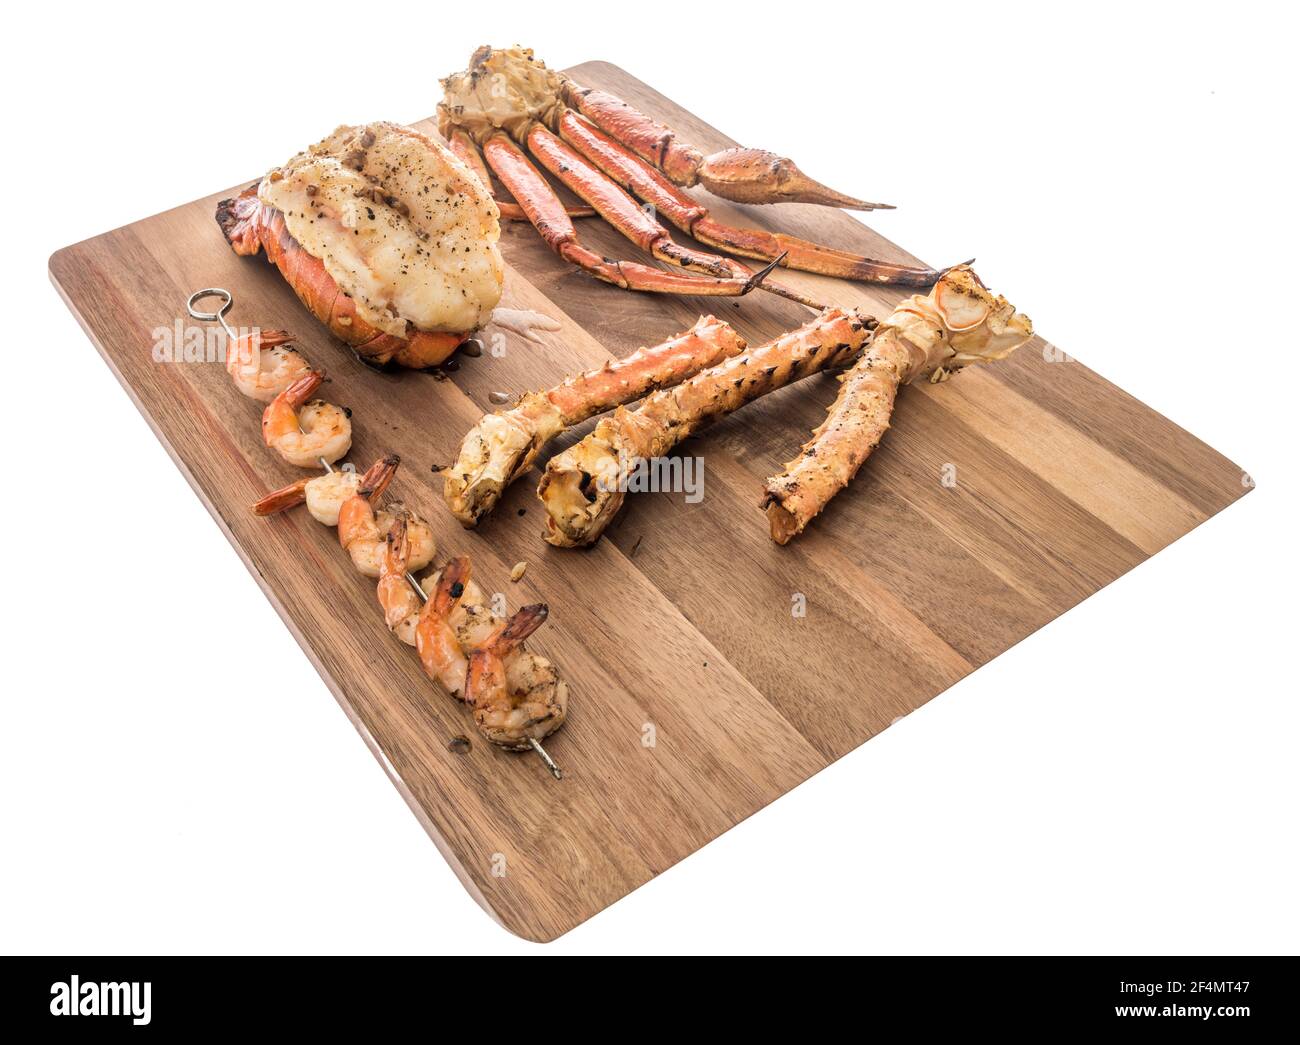 Une collection de différents types de fruits de mer avec queue de homard qui est le dos de selle, crevettes tigrées, crevettes sur brochettes, crabe des neiges de l'Alaska et roi d'Alaska c Banque D'Images